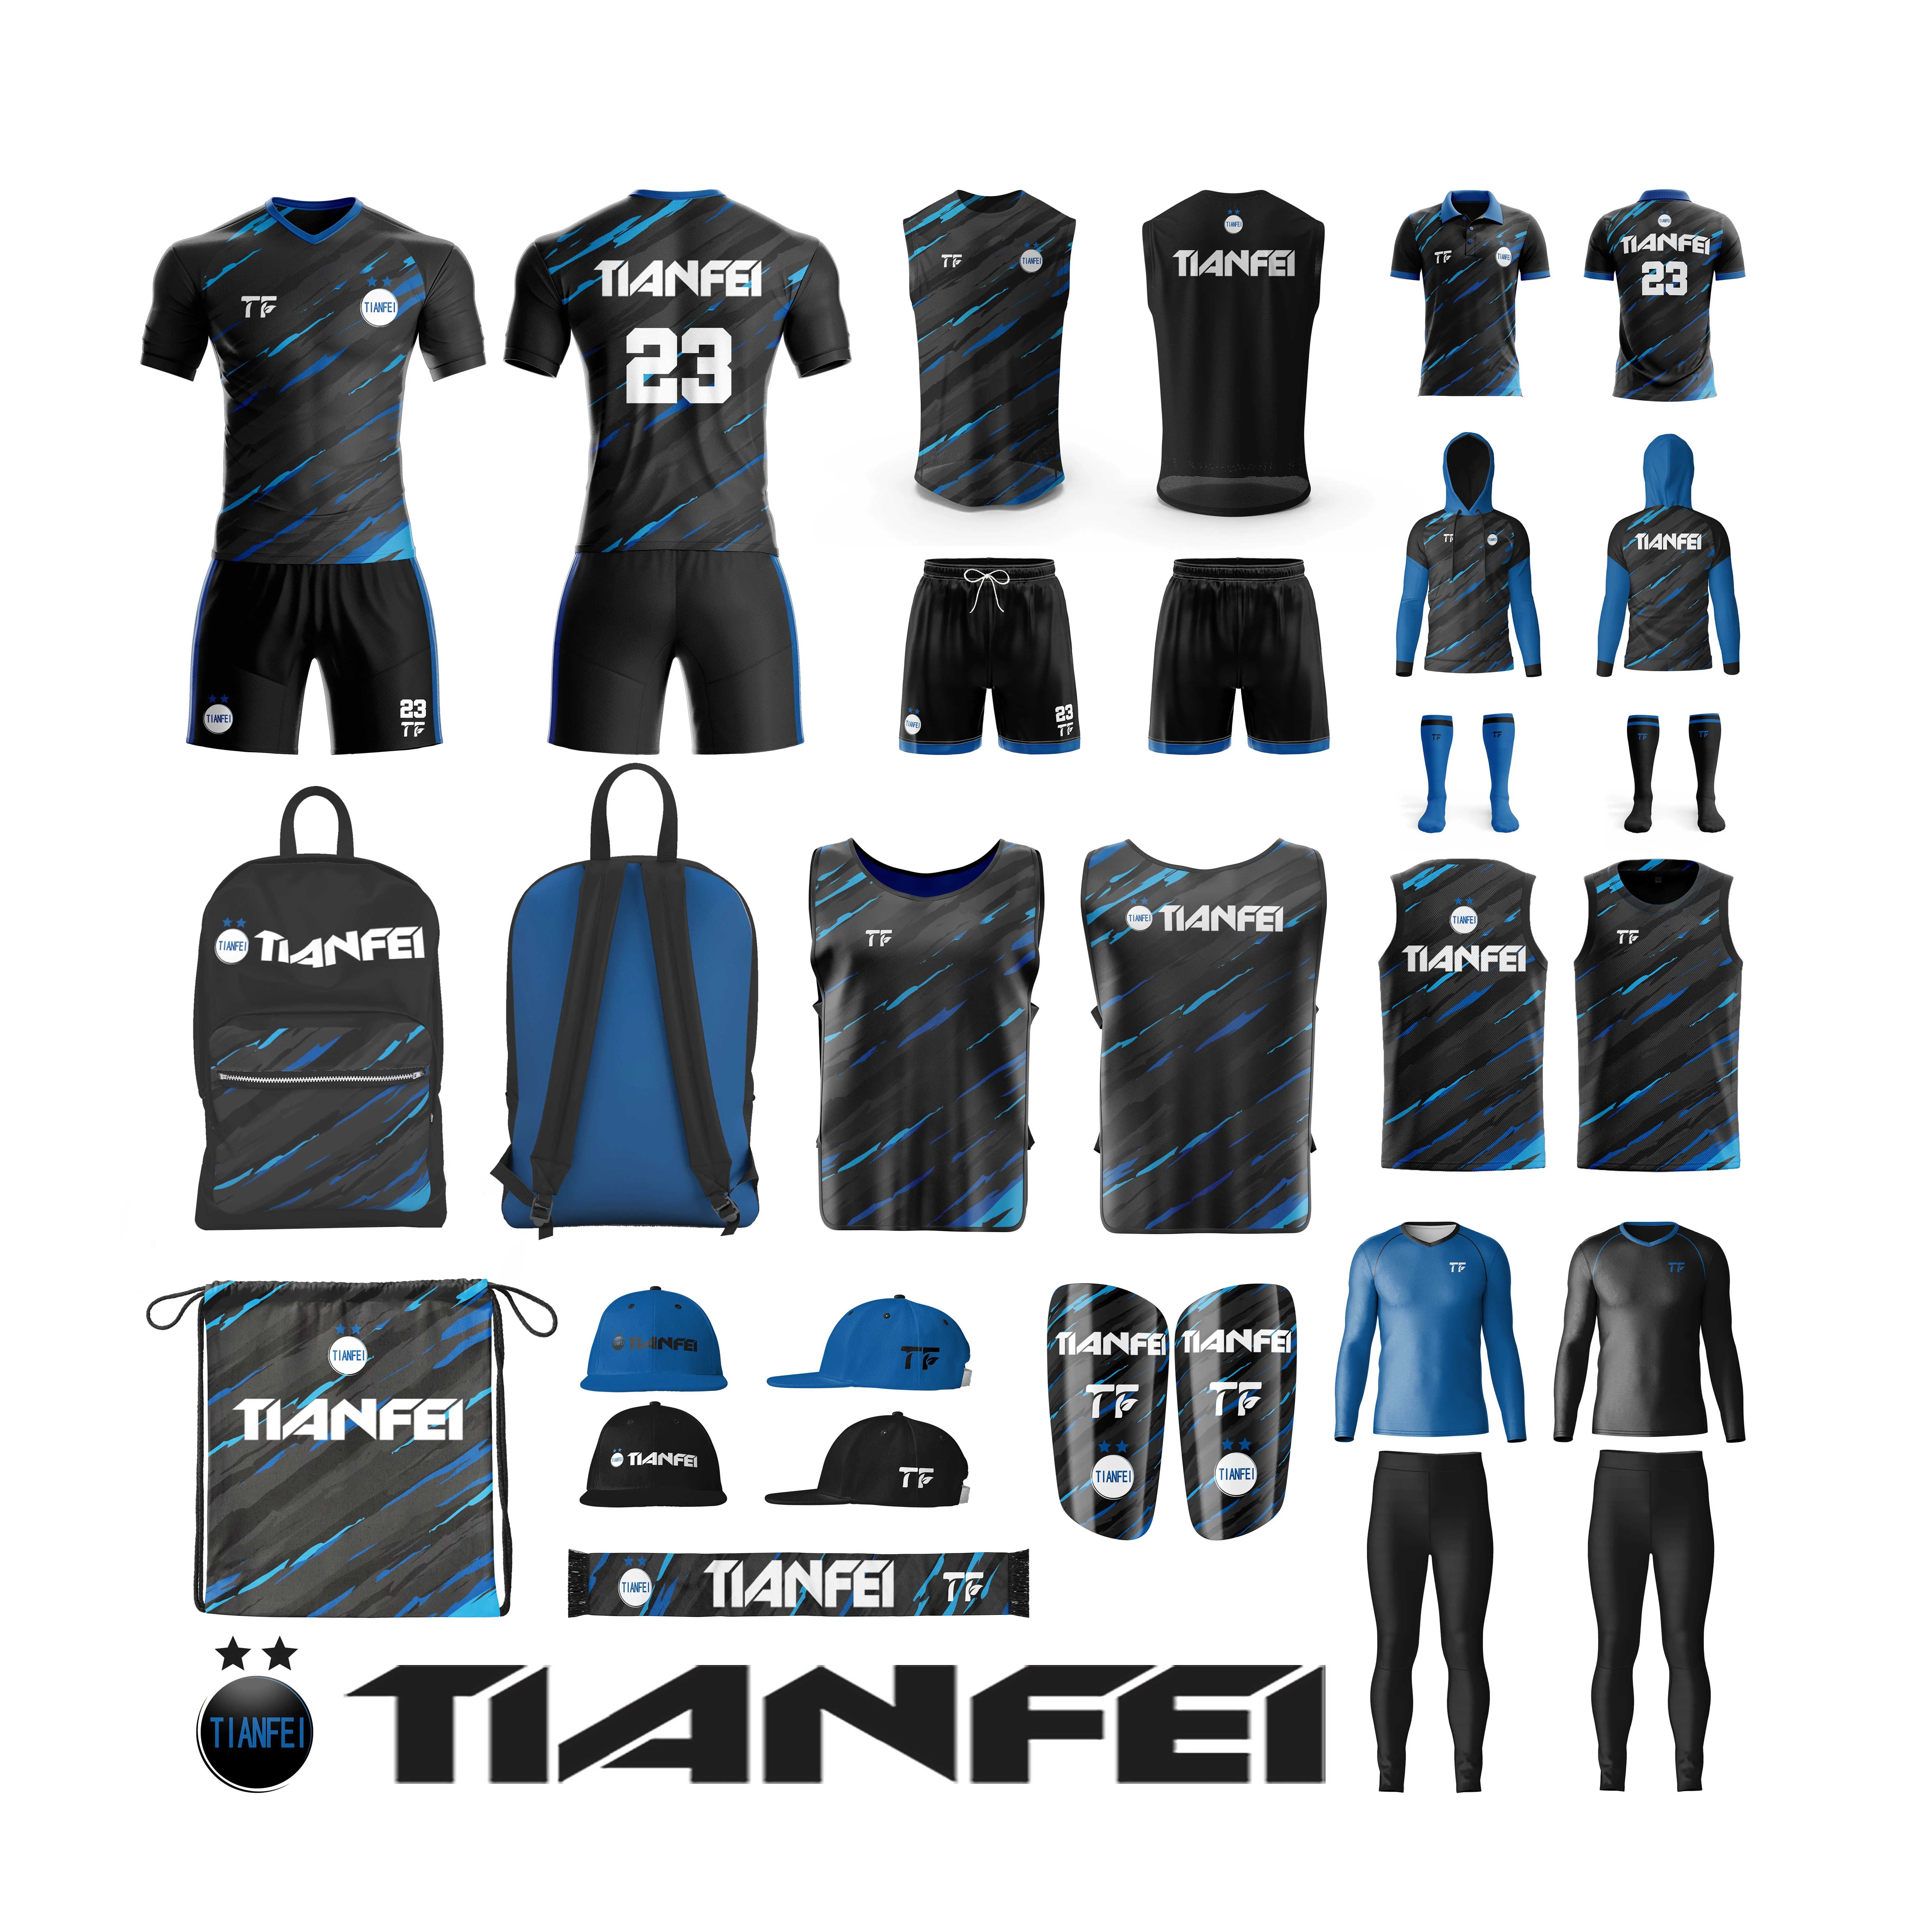 Maillot d'entraînement de football TF kit de maillot de football personnalisé survêtement de football vêtements de sport uniforme de football sublimé